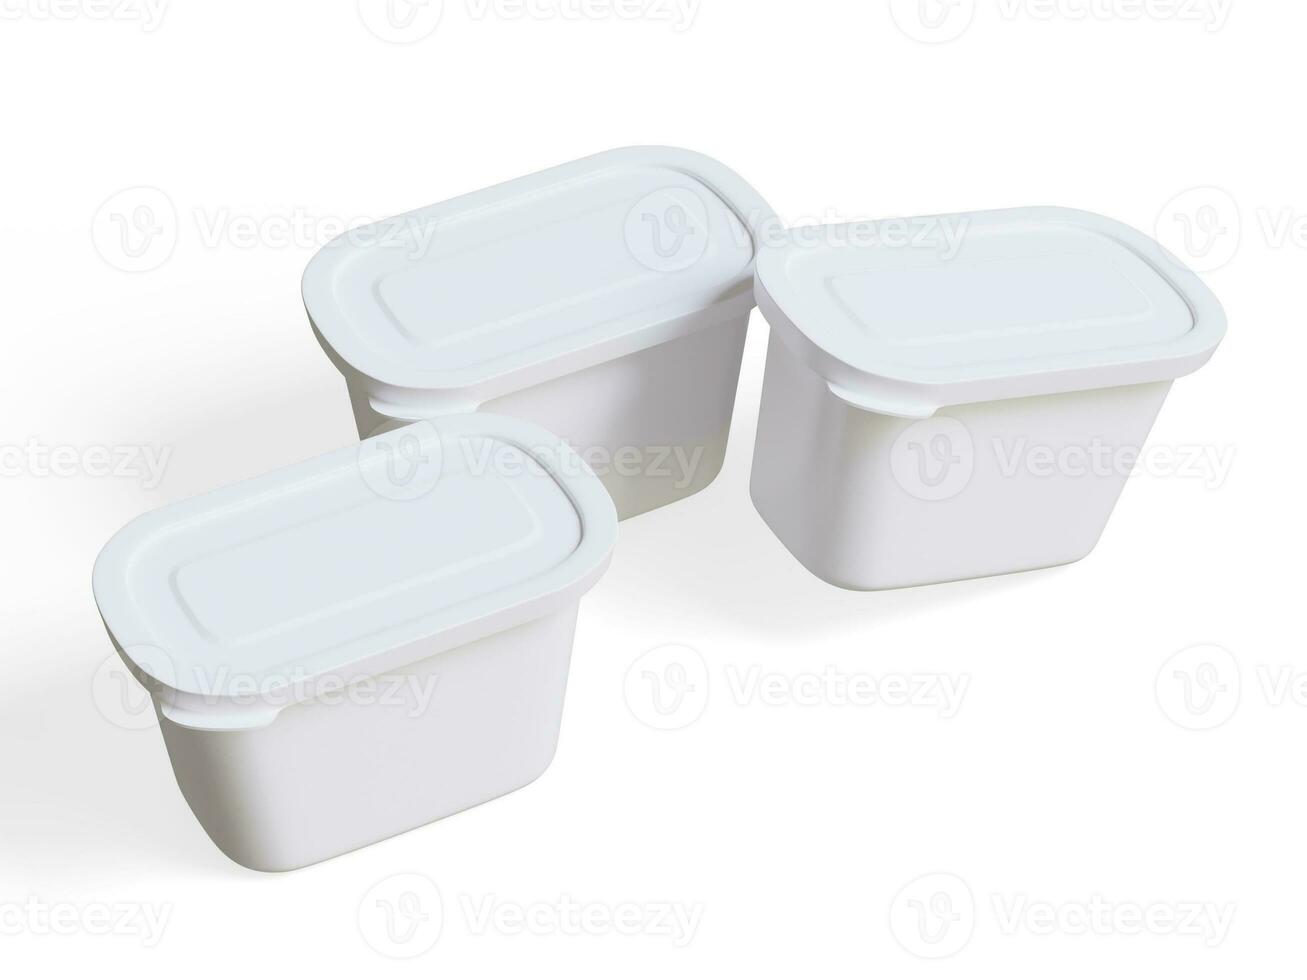 realistisch Plastik Container Verpackung oder Plastik Essen zum Attrappe, Lehrmodell, Simulation Sammlung Rendern 3d Illustration isoliert auf Weiß Hintergrund foto